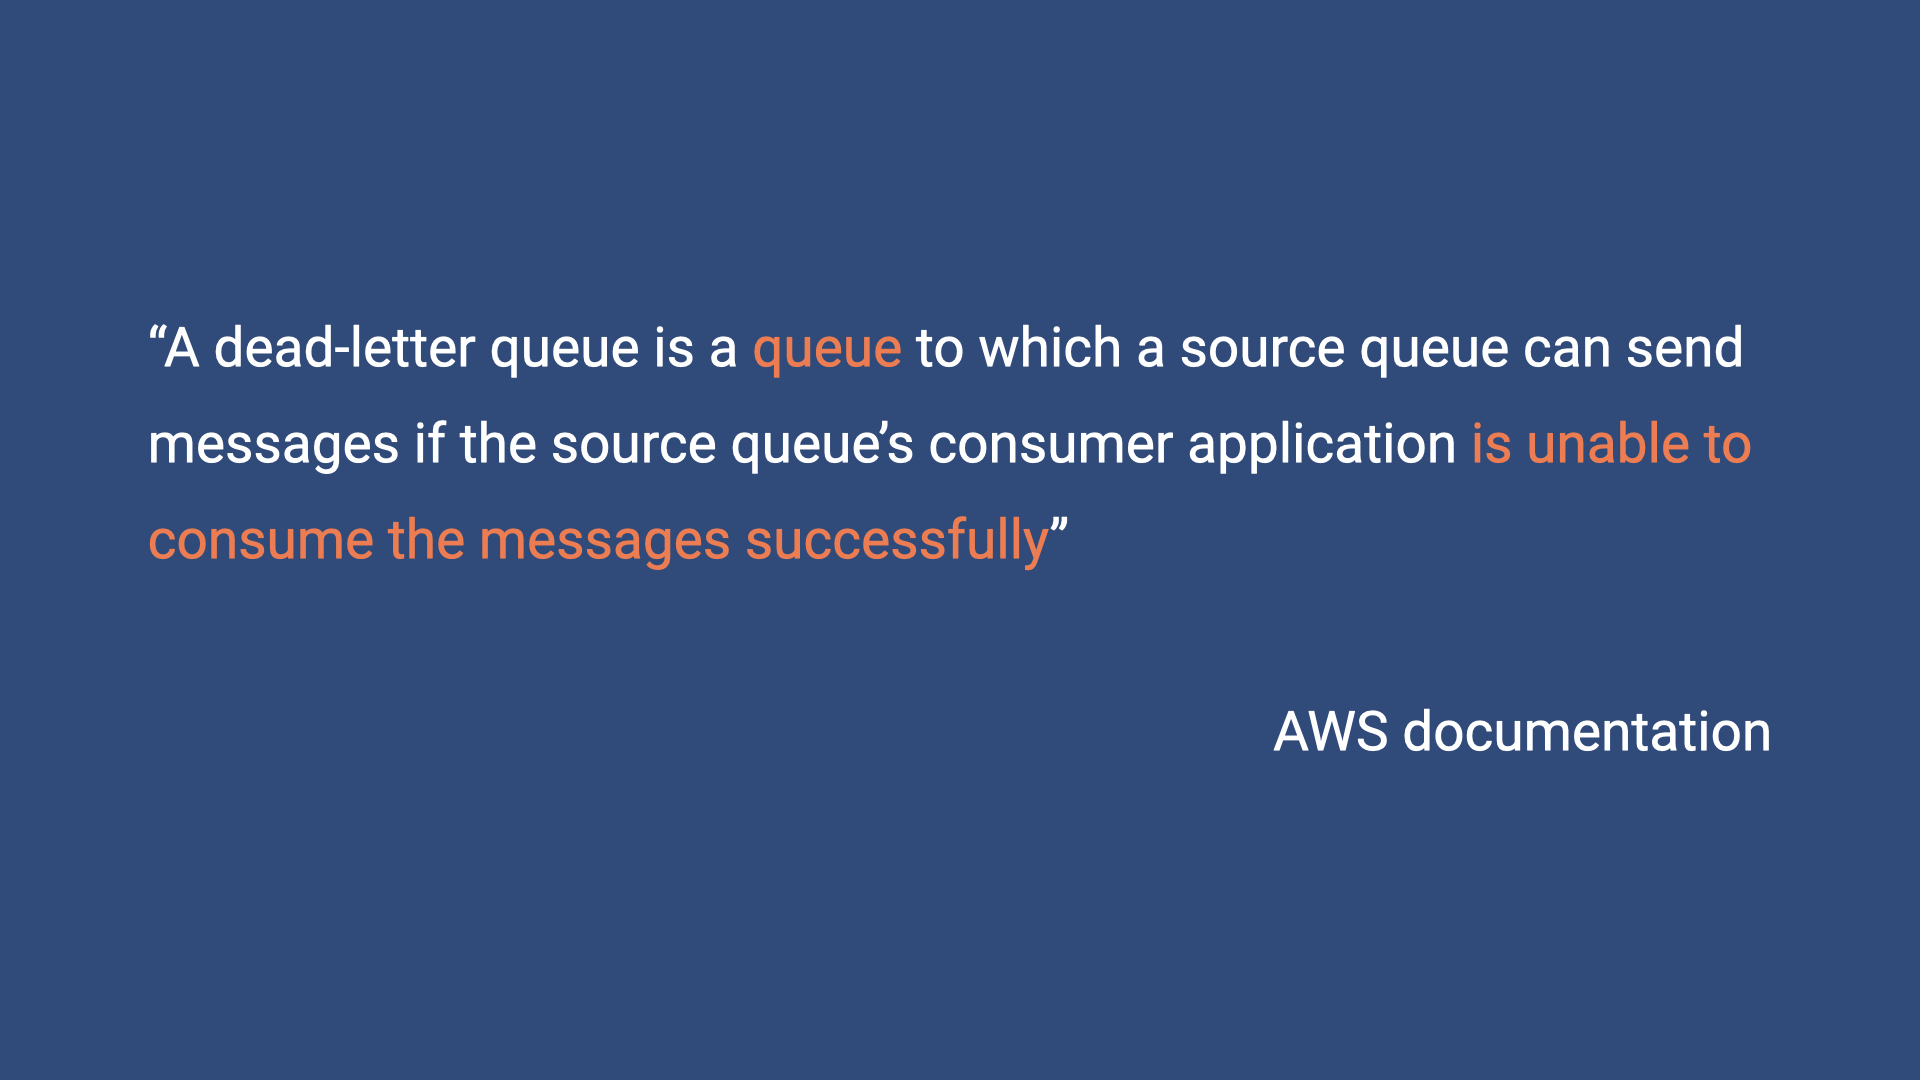 AWS definition of a dead-letter queue.